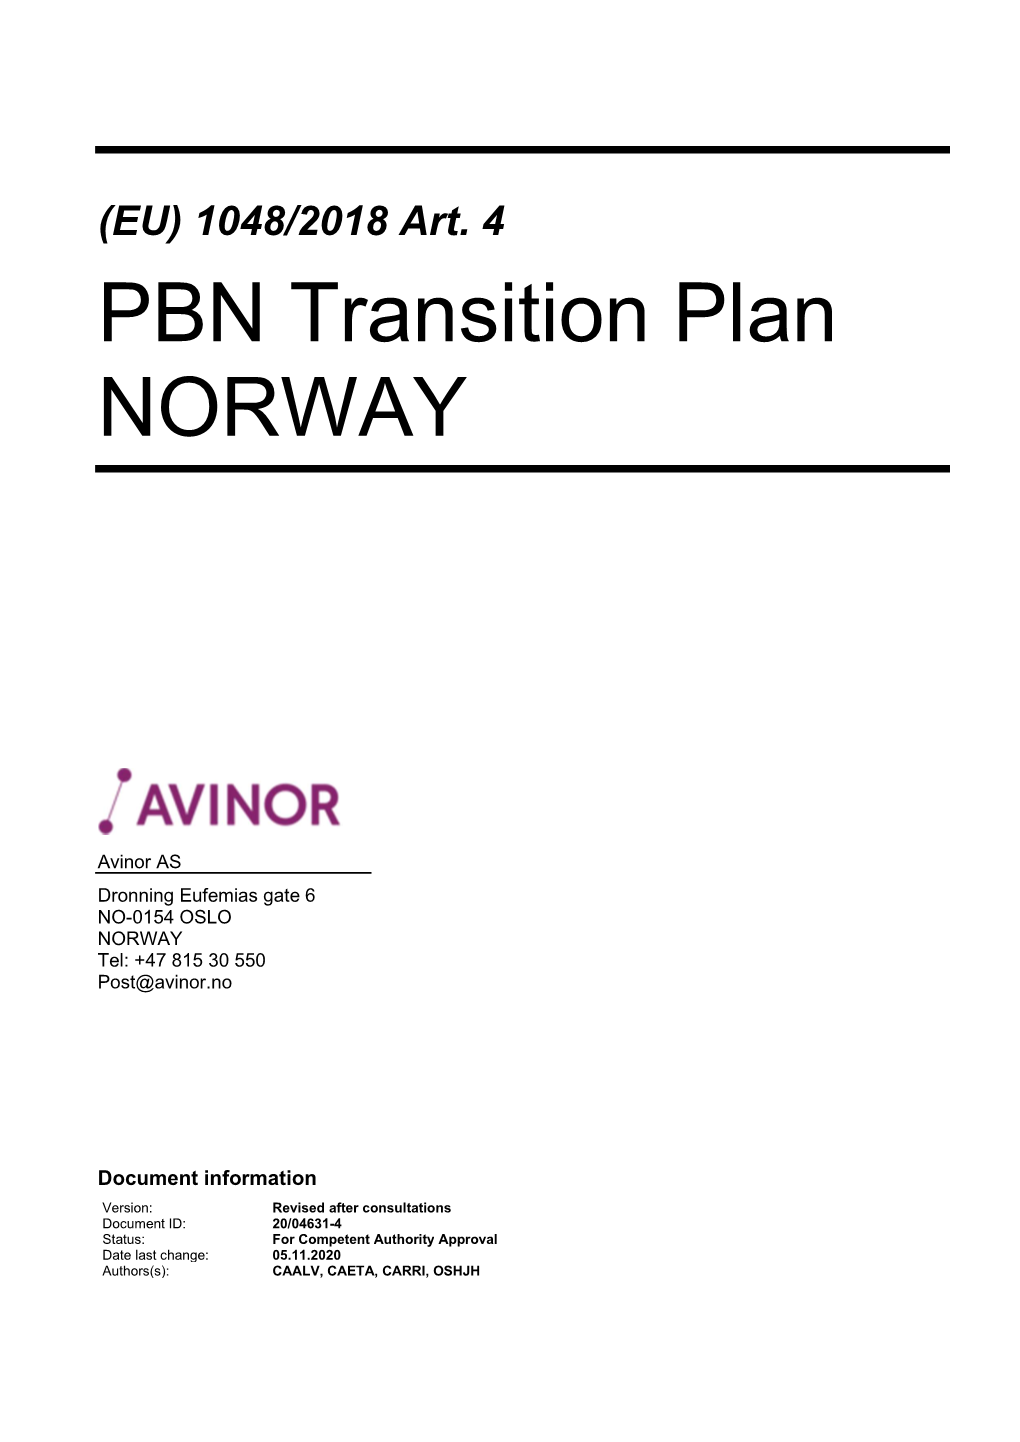 PBN Transition Plan NORWAY